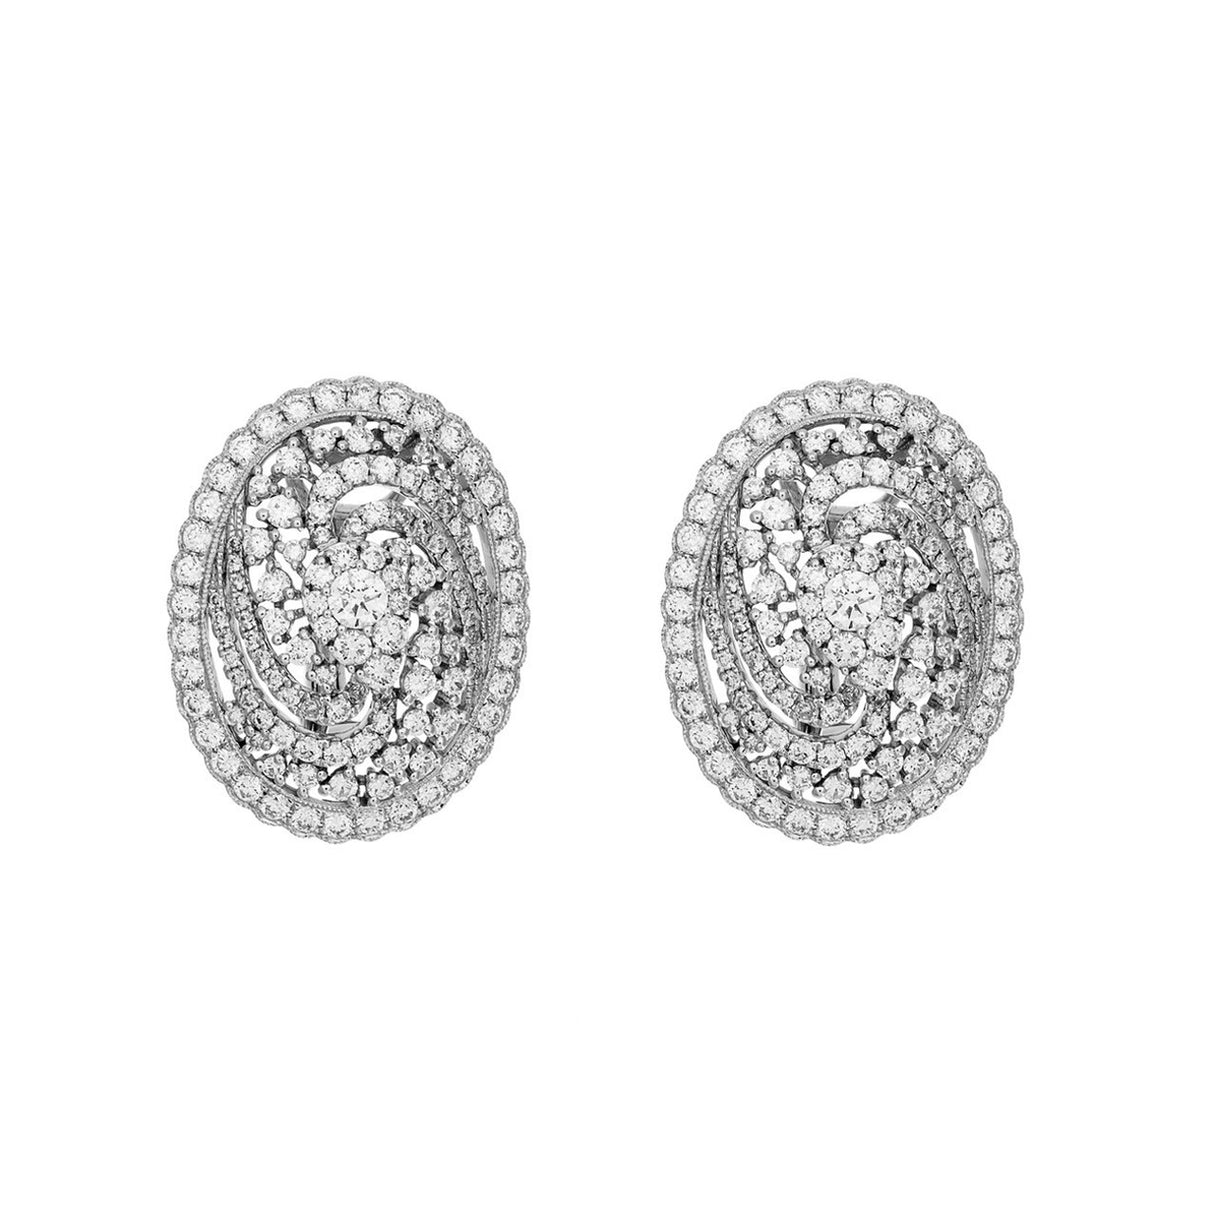 18K White Gold 3.08 Carat Diamond Earrings